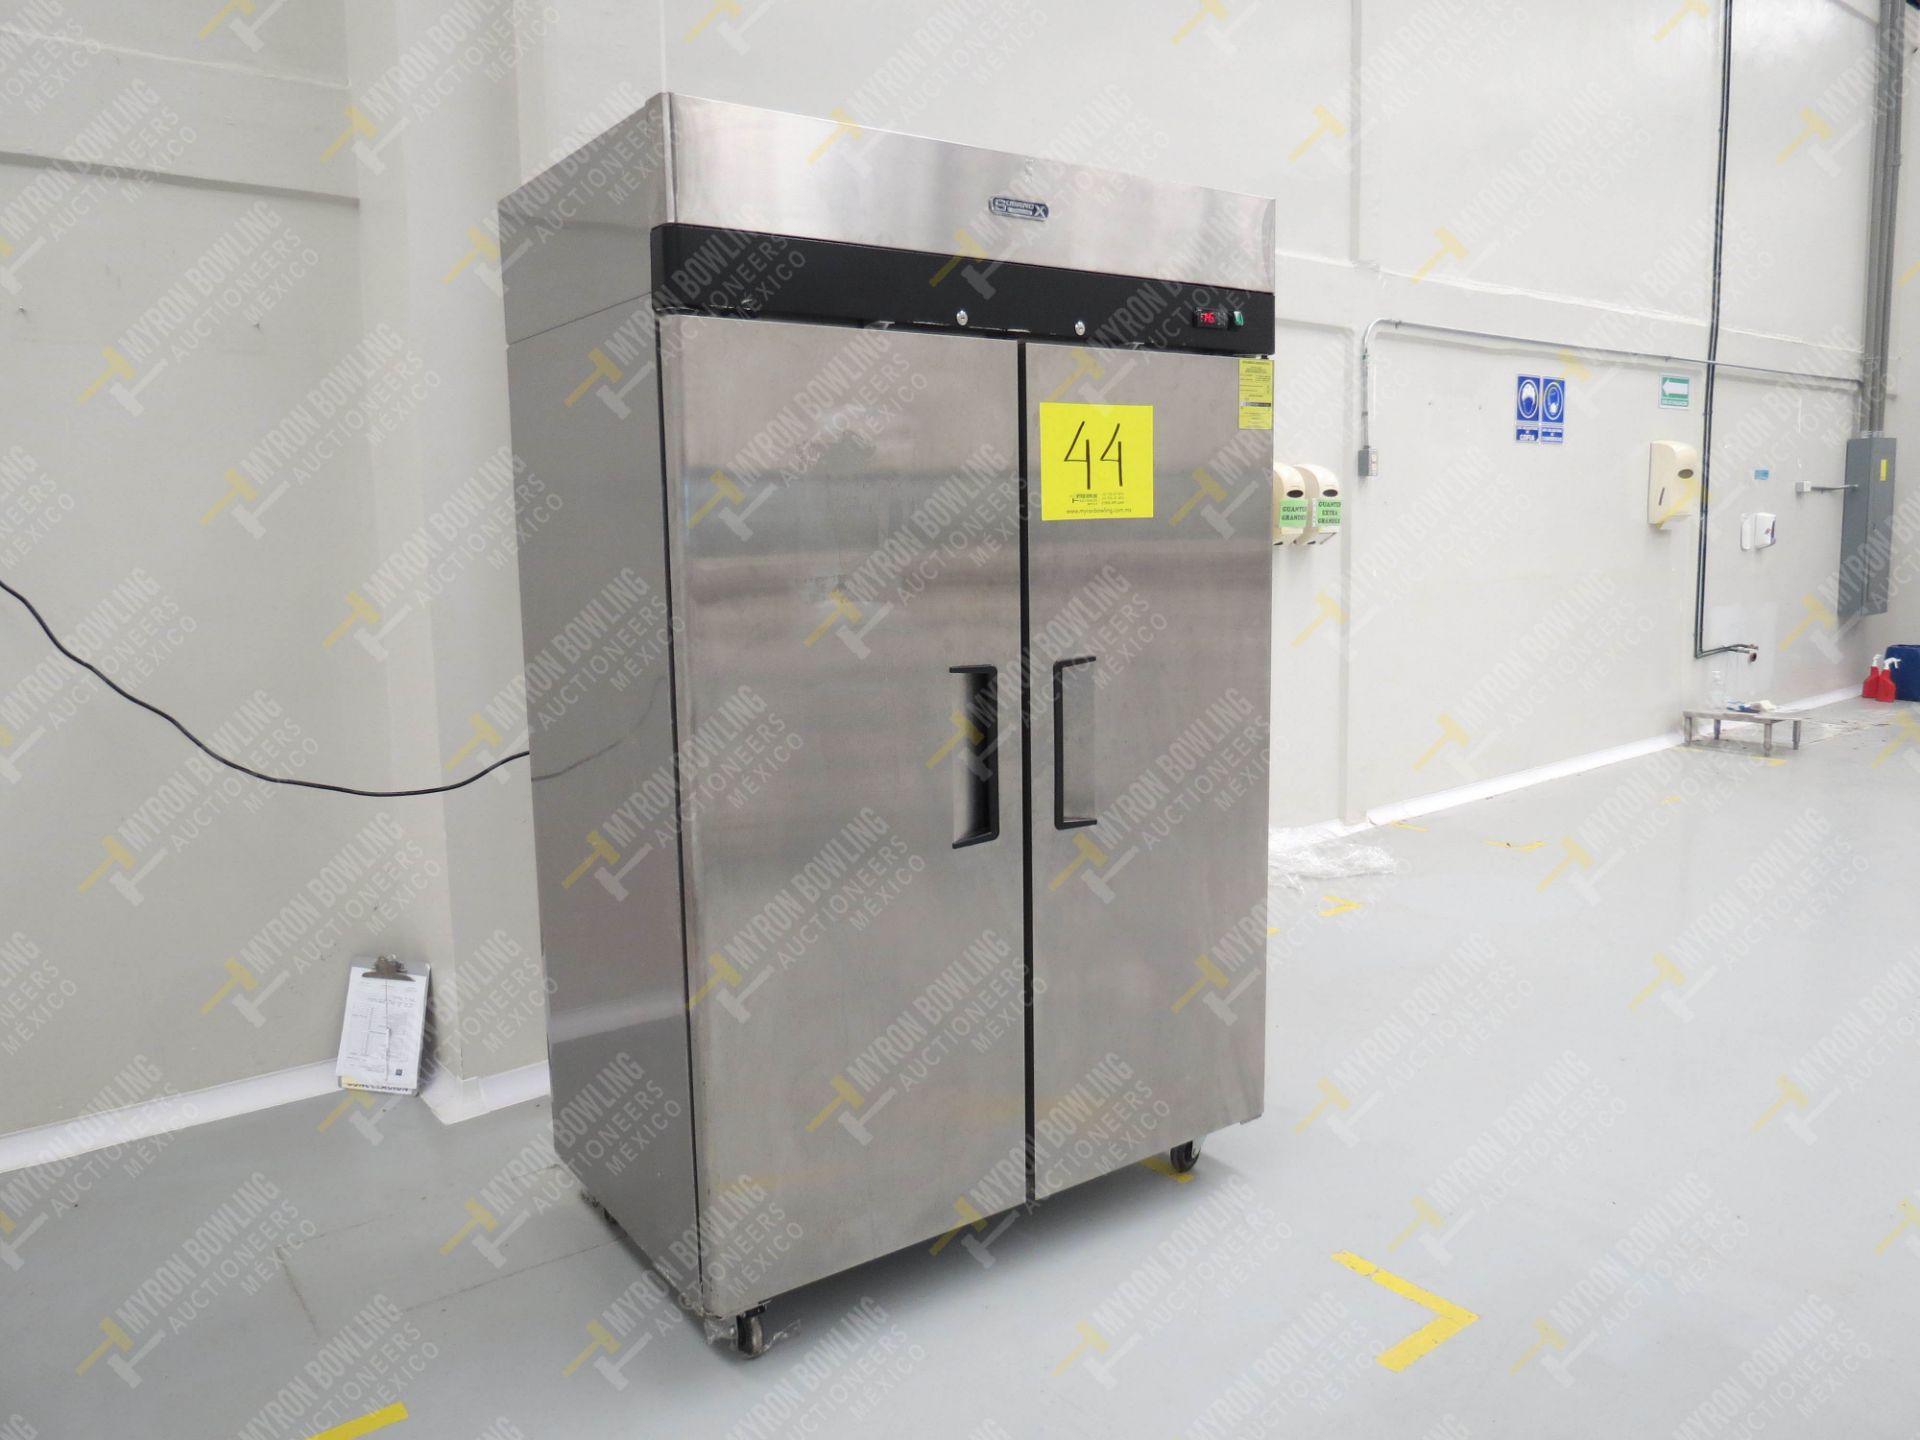 Refrigerador en acero inoxidable marca Sobrinox, Modelo CVS-247-S, No. de Serie E90015, … - Image 2 of 4